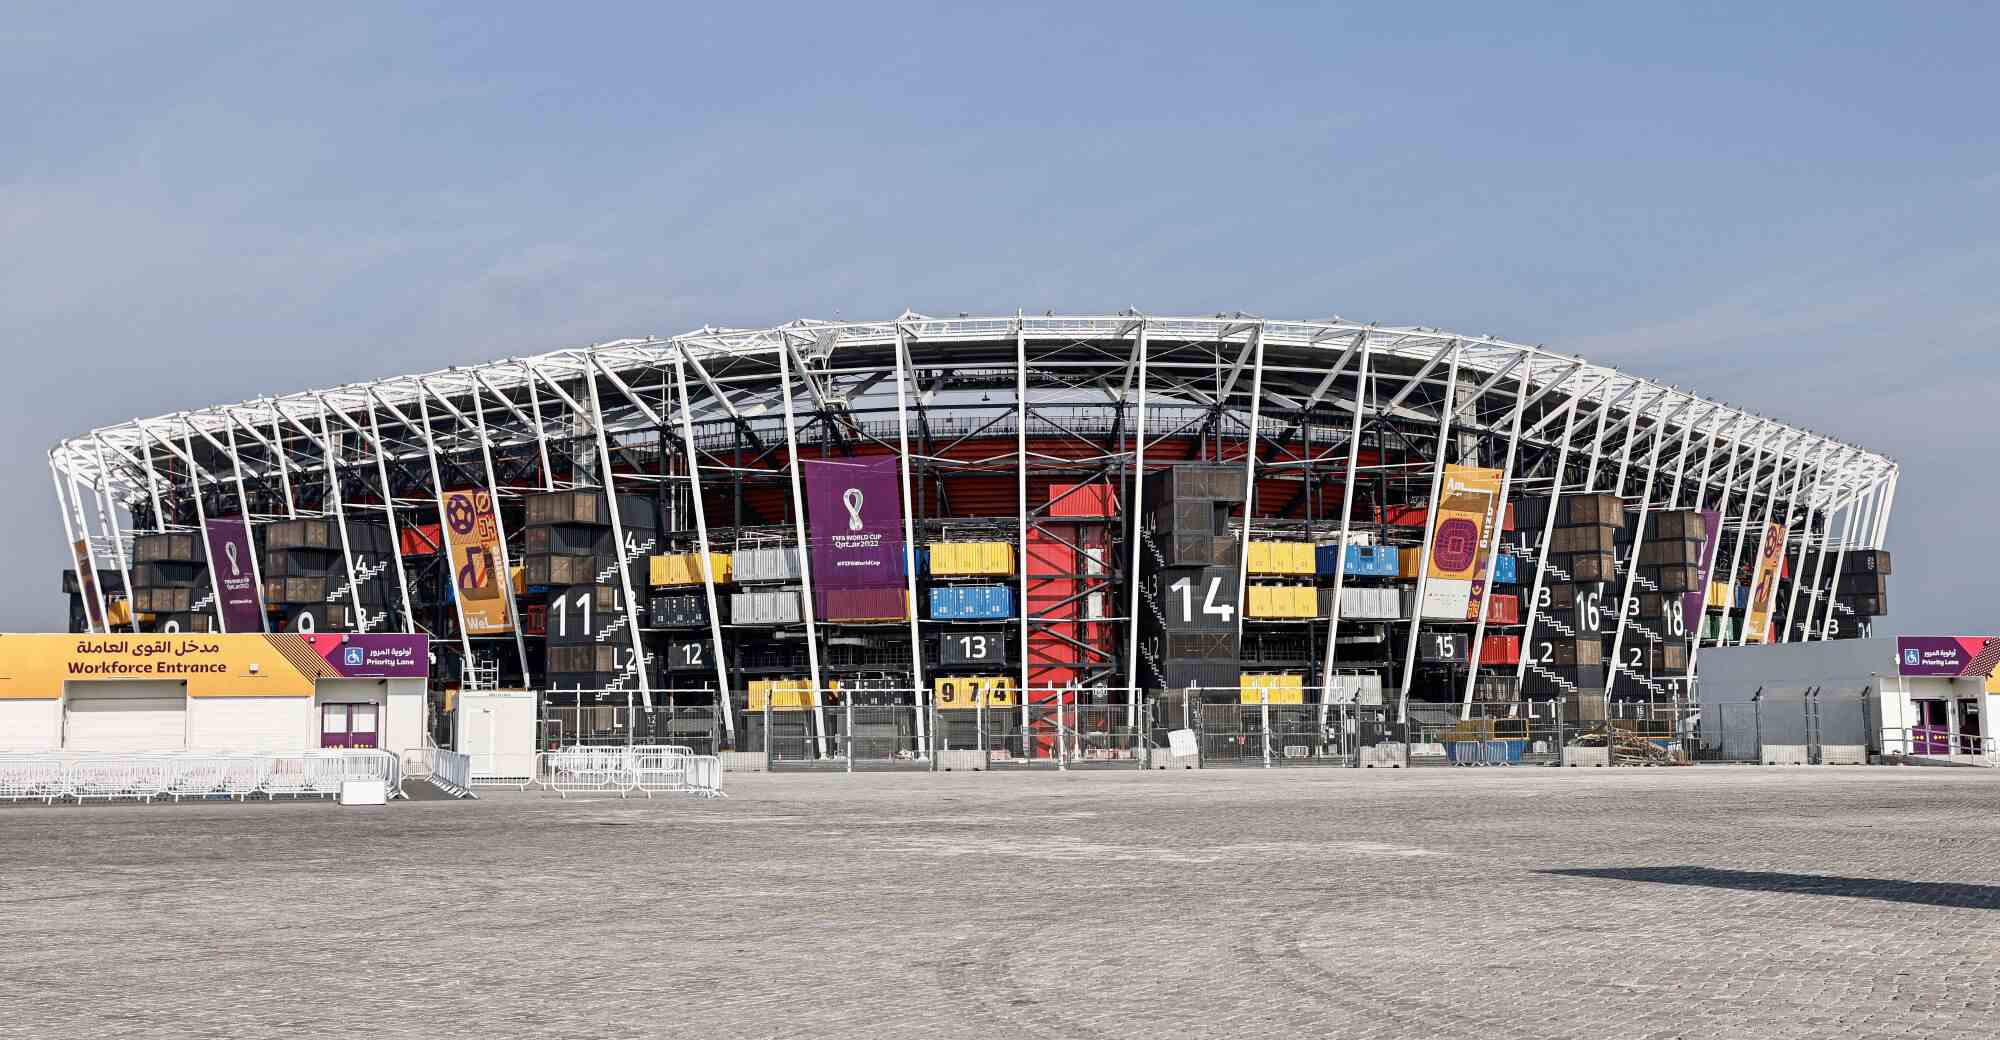 Stadion 974 im Stadtteil Ras Abu Aboud in Doha, Katar.